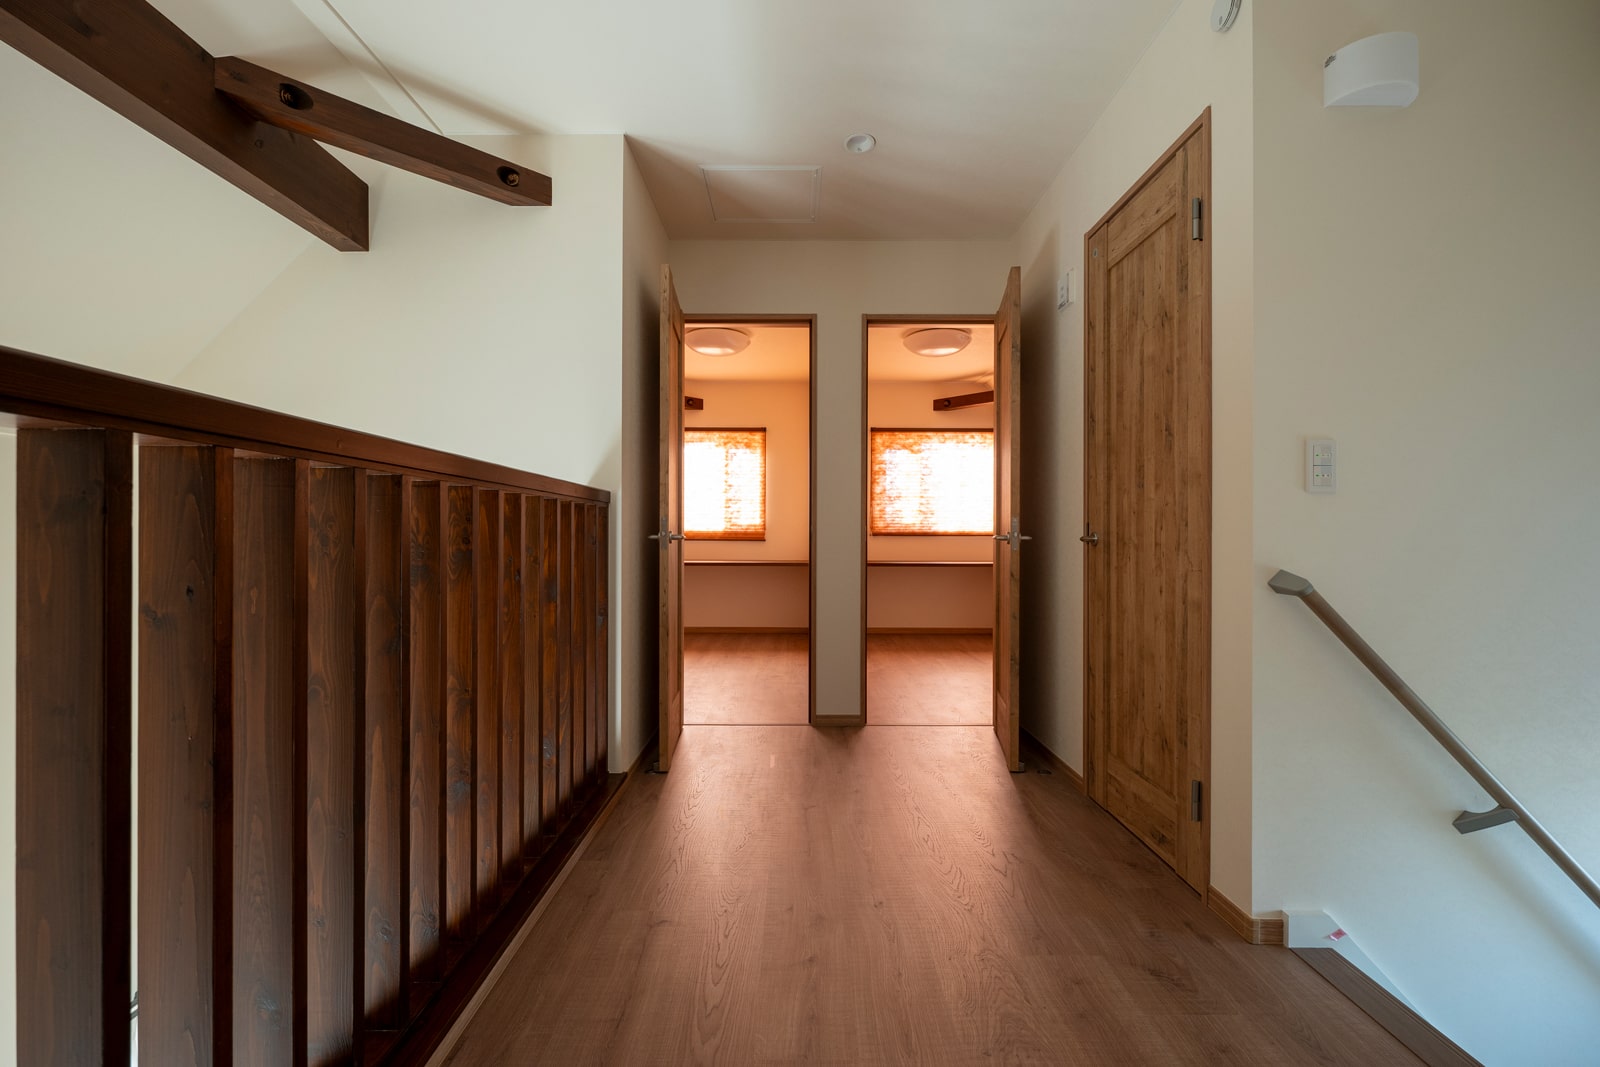 階段を上ると現れる幅広の廊下の両端に寝室と2つの個室を配置した間取り